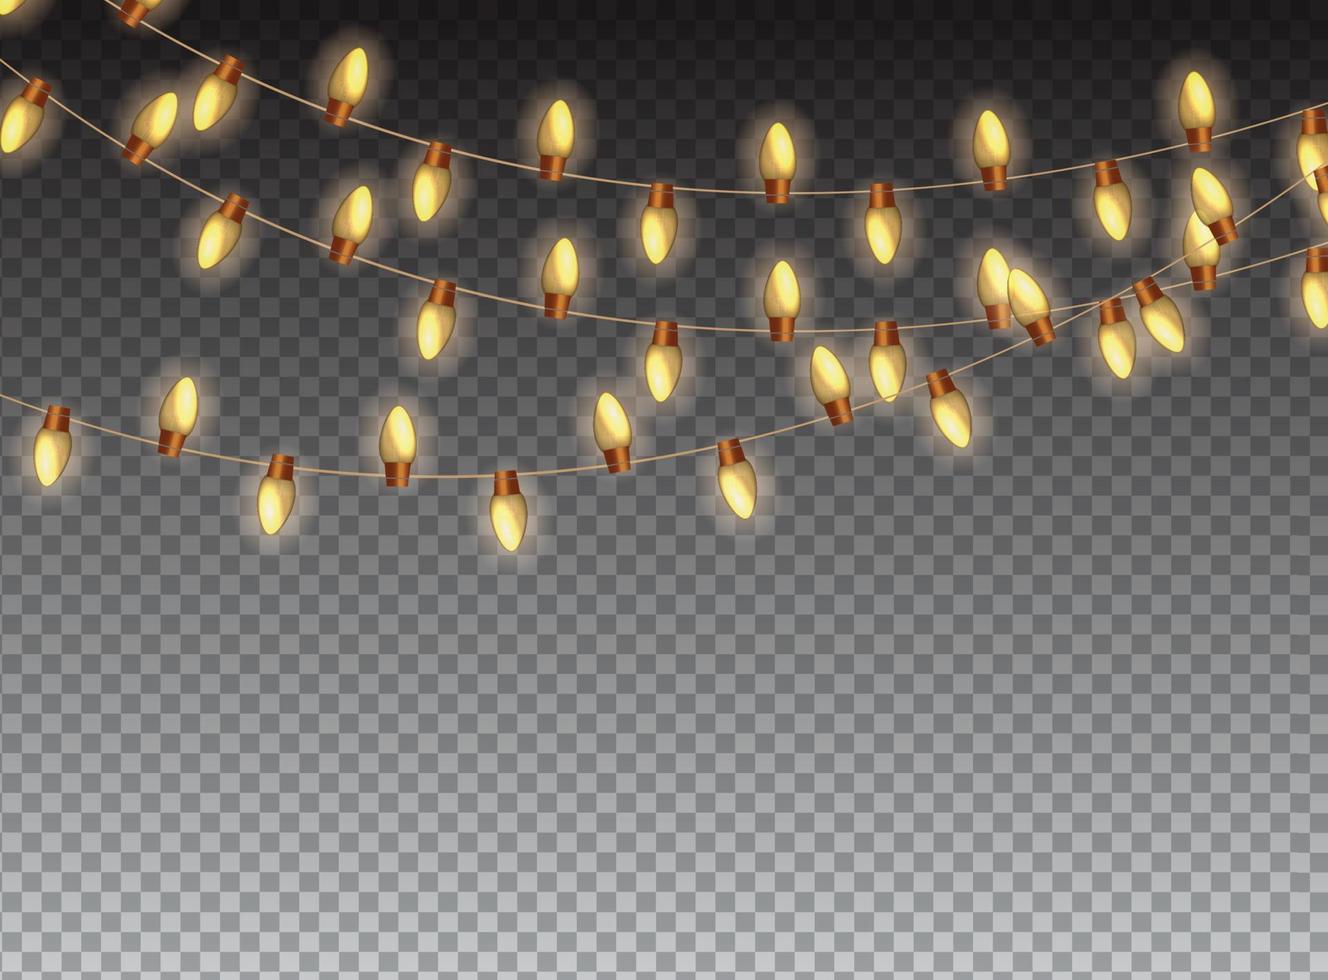 jul krans glödlampa på transparent bakgrund vektorillustration vektor